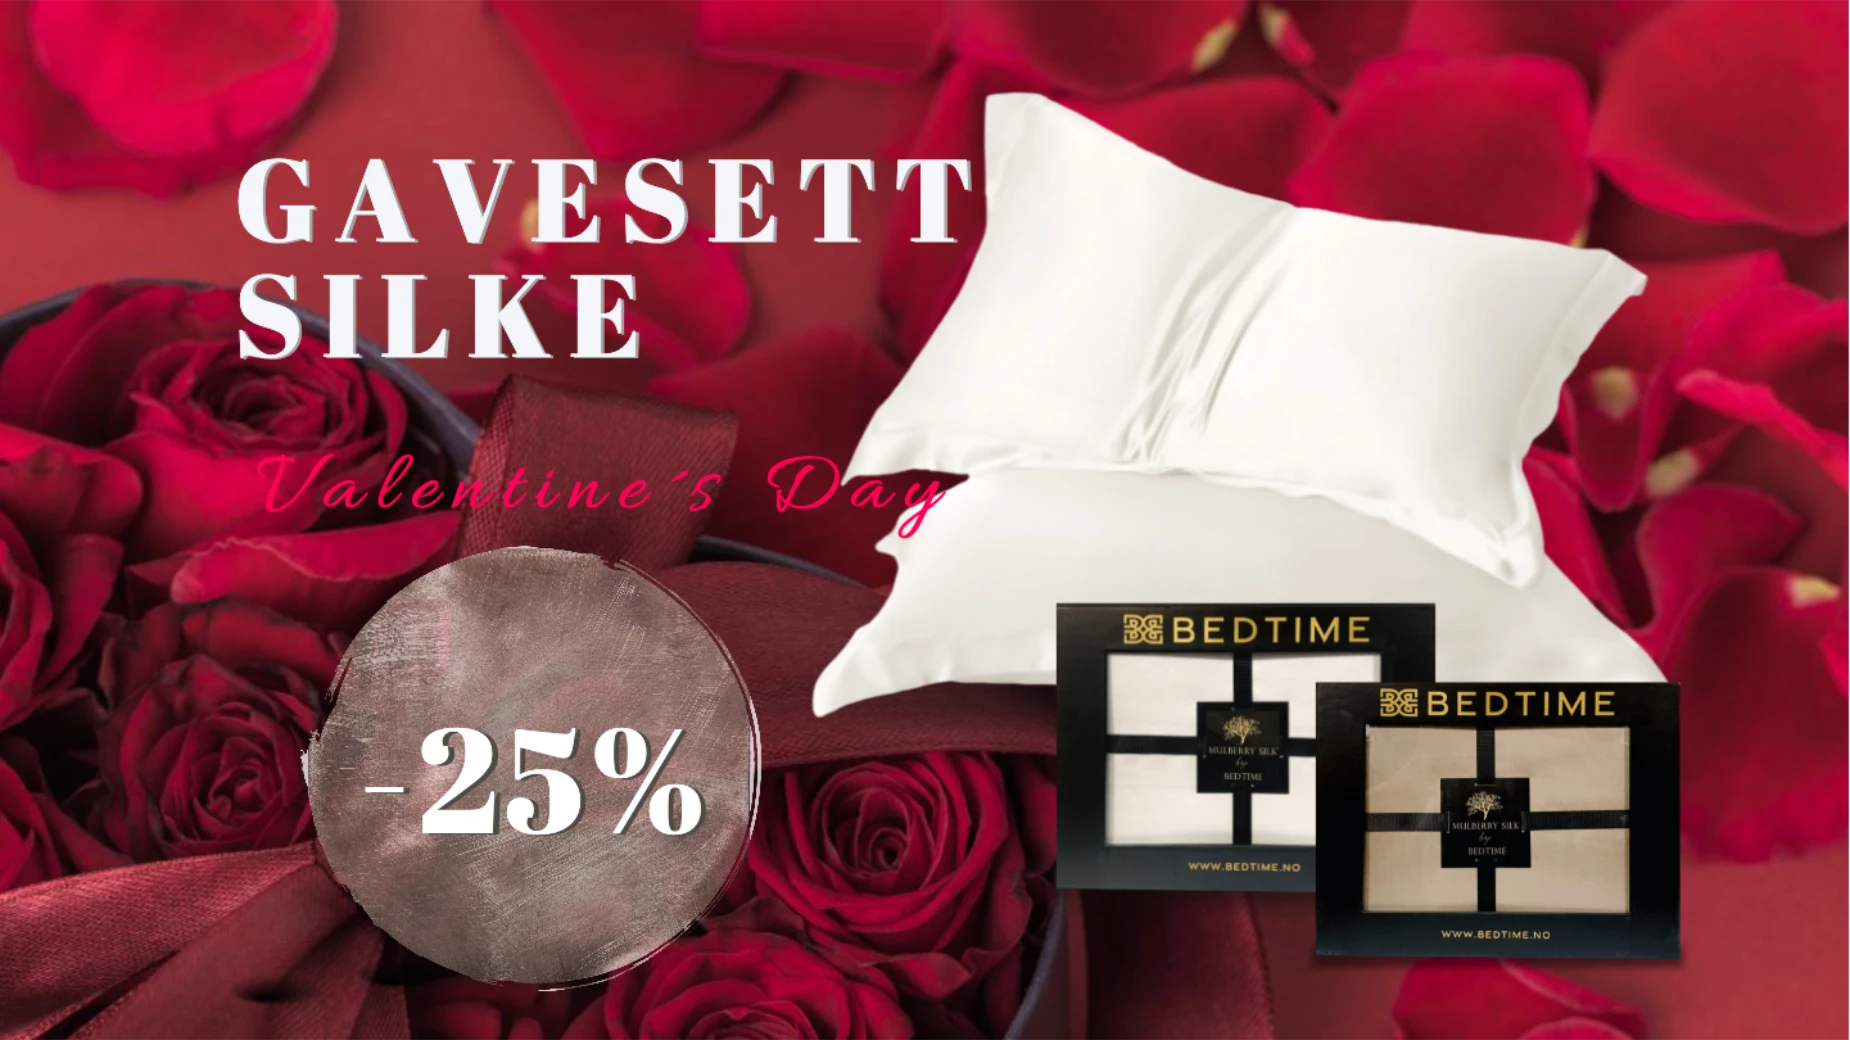 Gavesett silke -25%